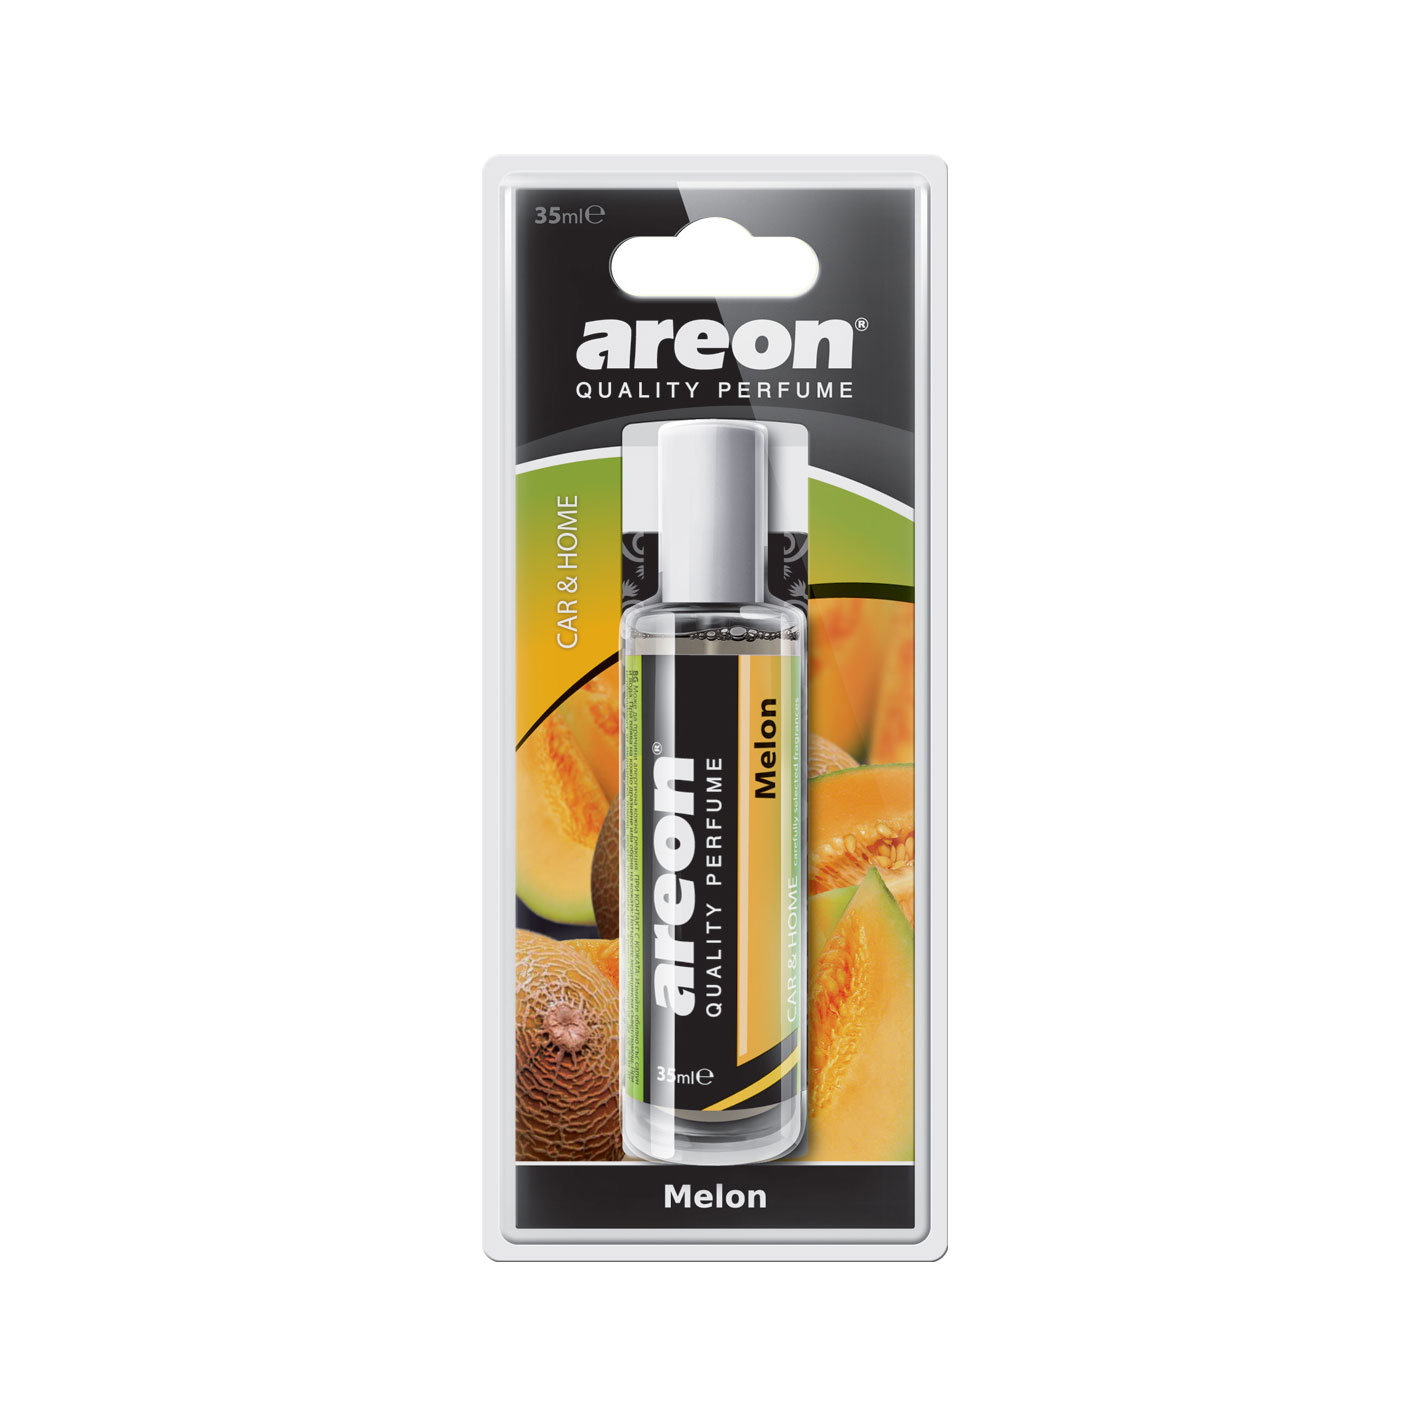 Areon Perfume 35ml Melon